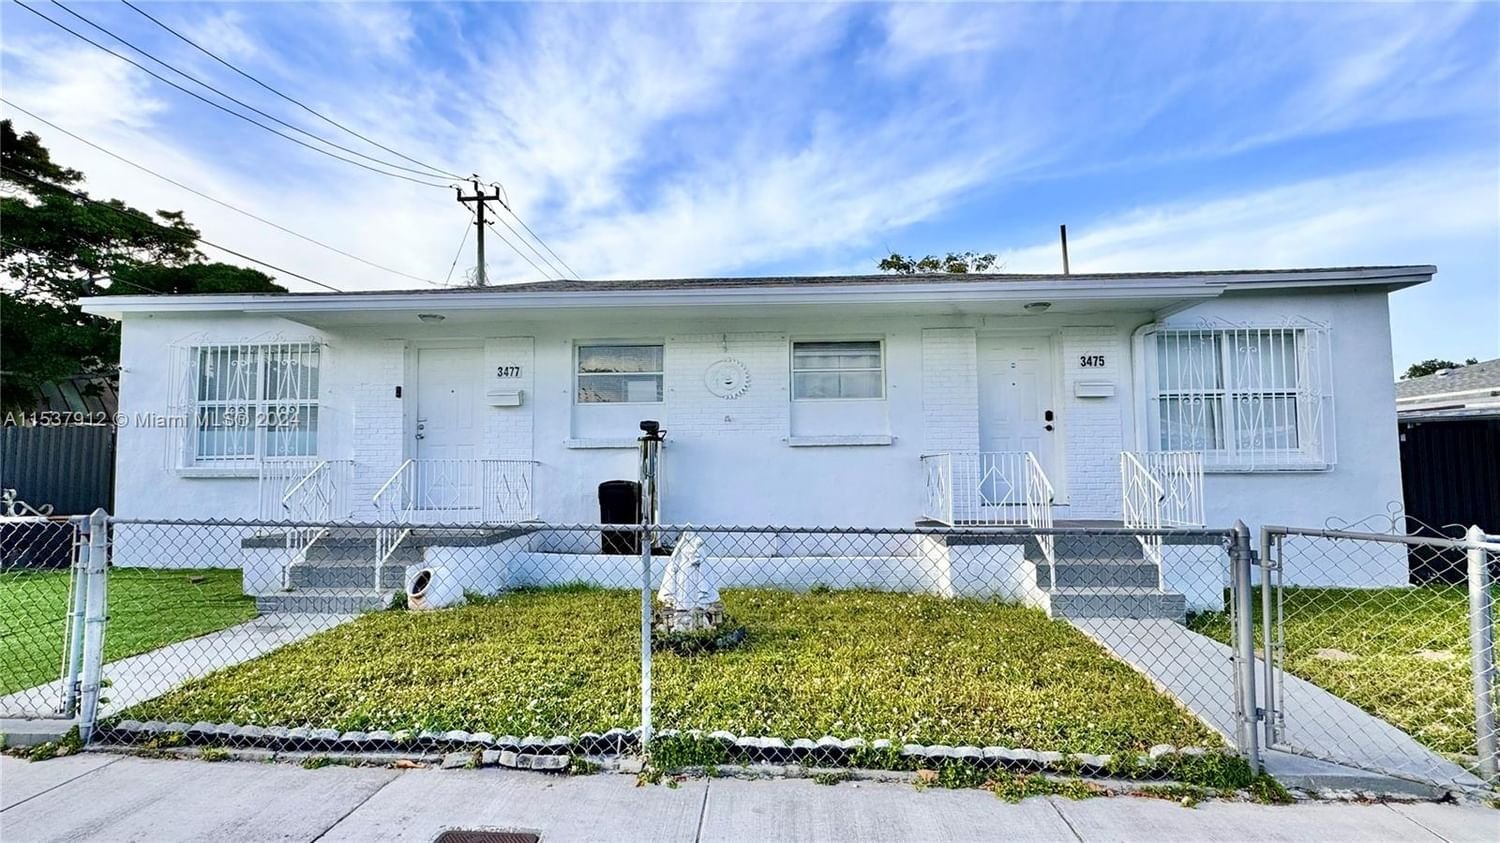 Real estate property located at 3475 28th St, Miami-Dade County, DE CARLO SUB, Miami, FL